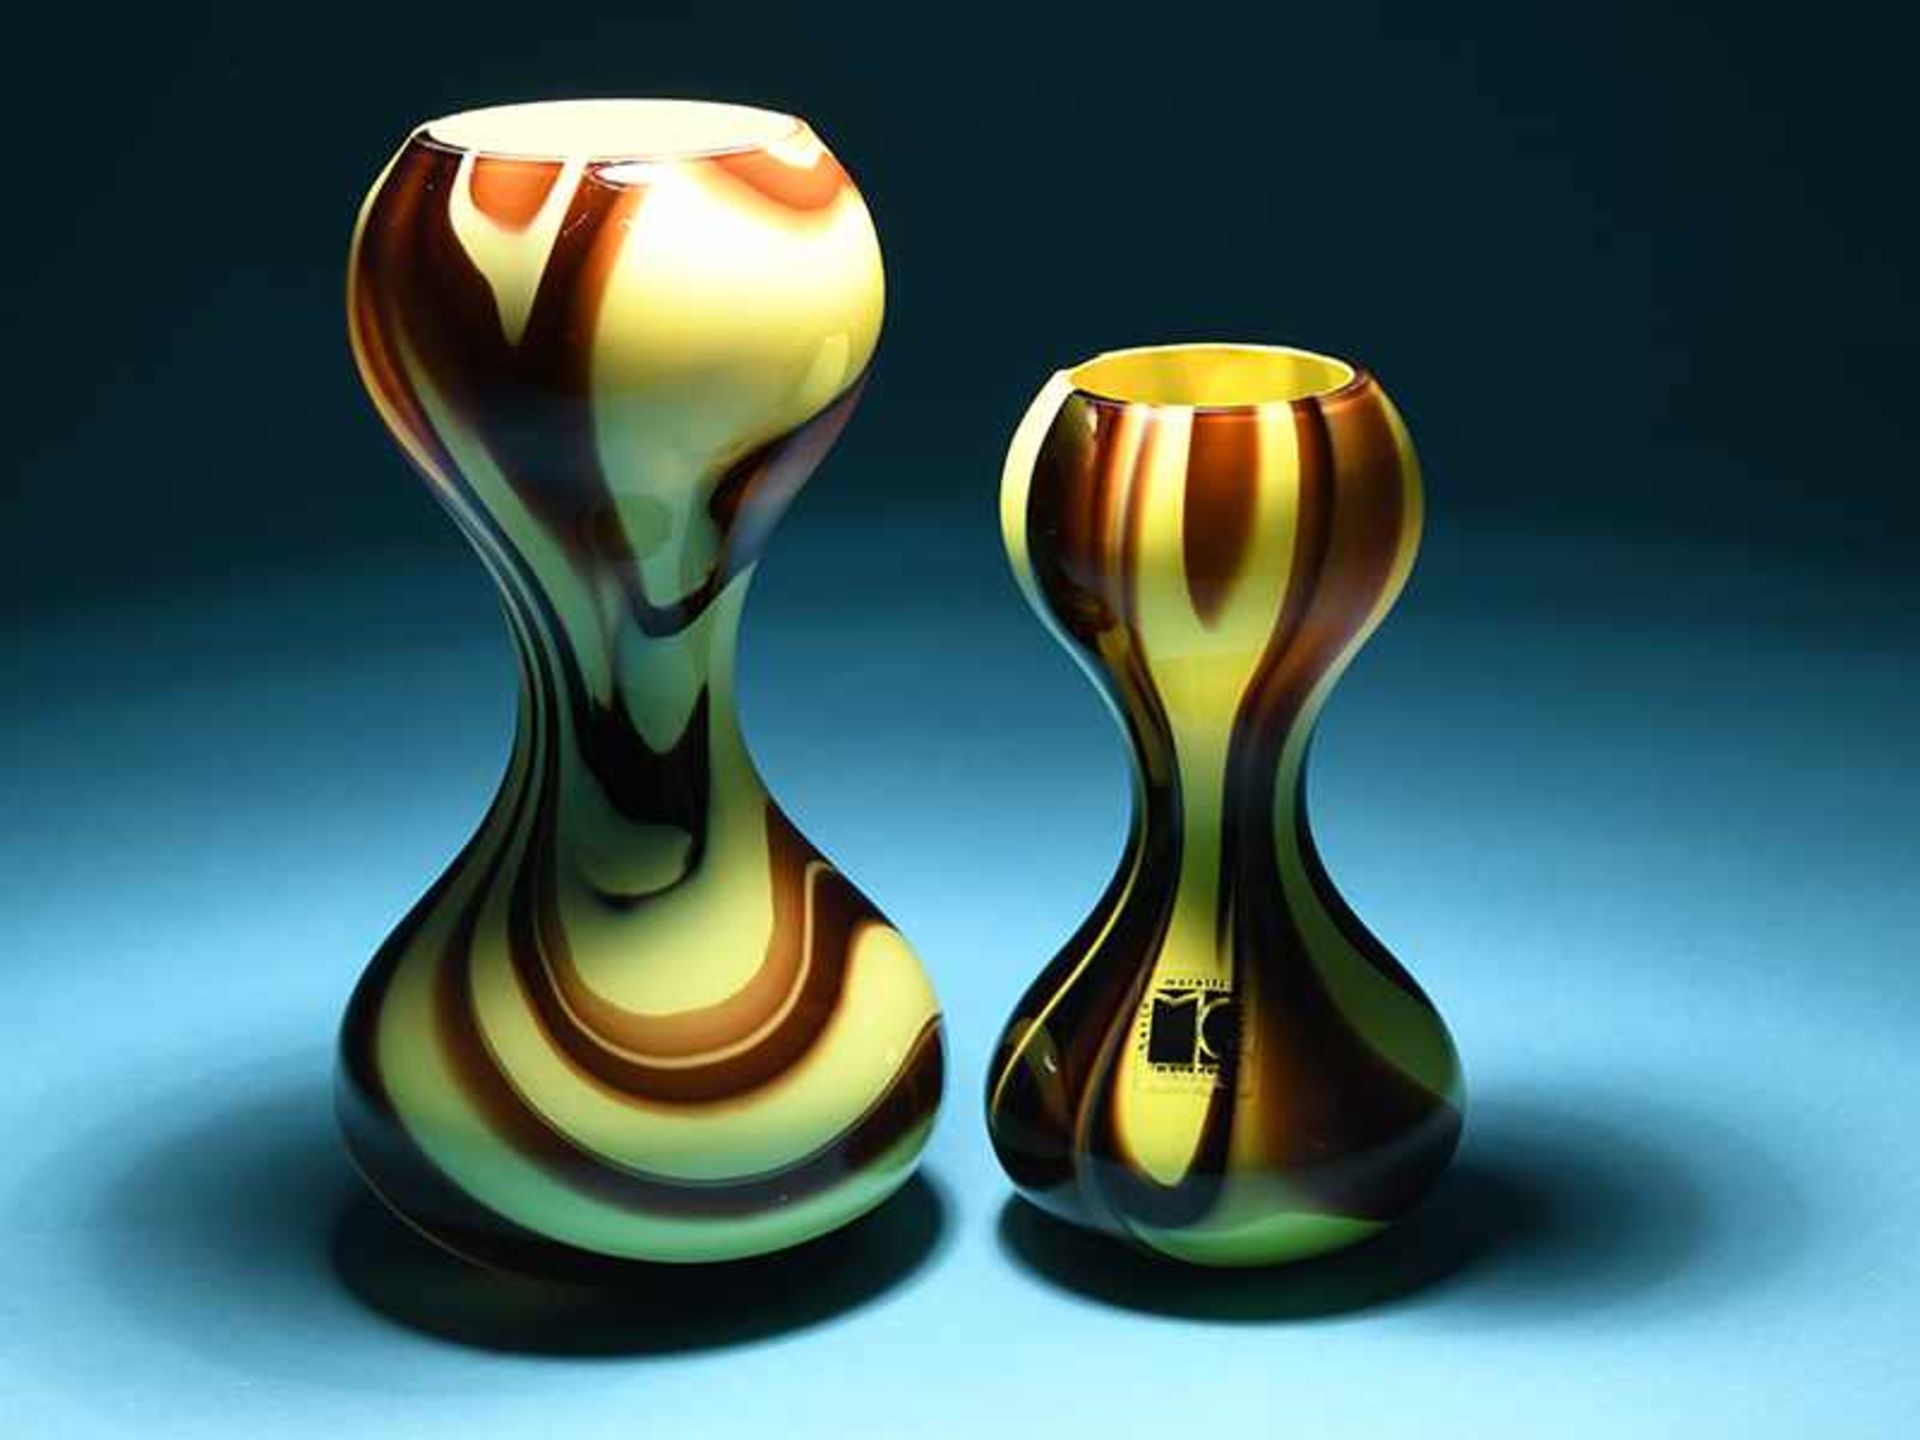 2 "Marble"-Vasen, Carlo Moretti Murano, 1970er Jahre. Gelbes Glas marmoriert durch Überfang mit